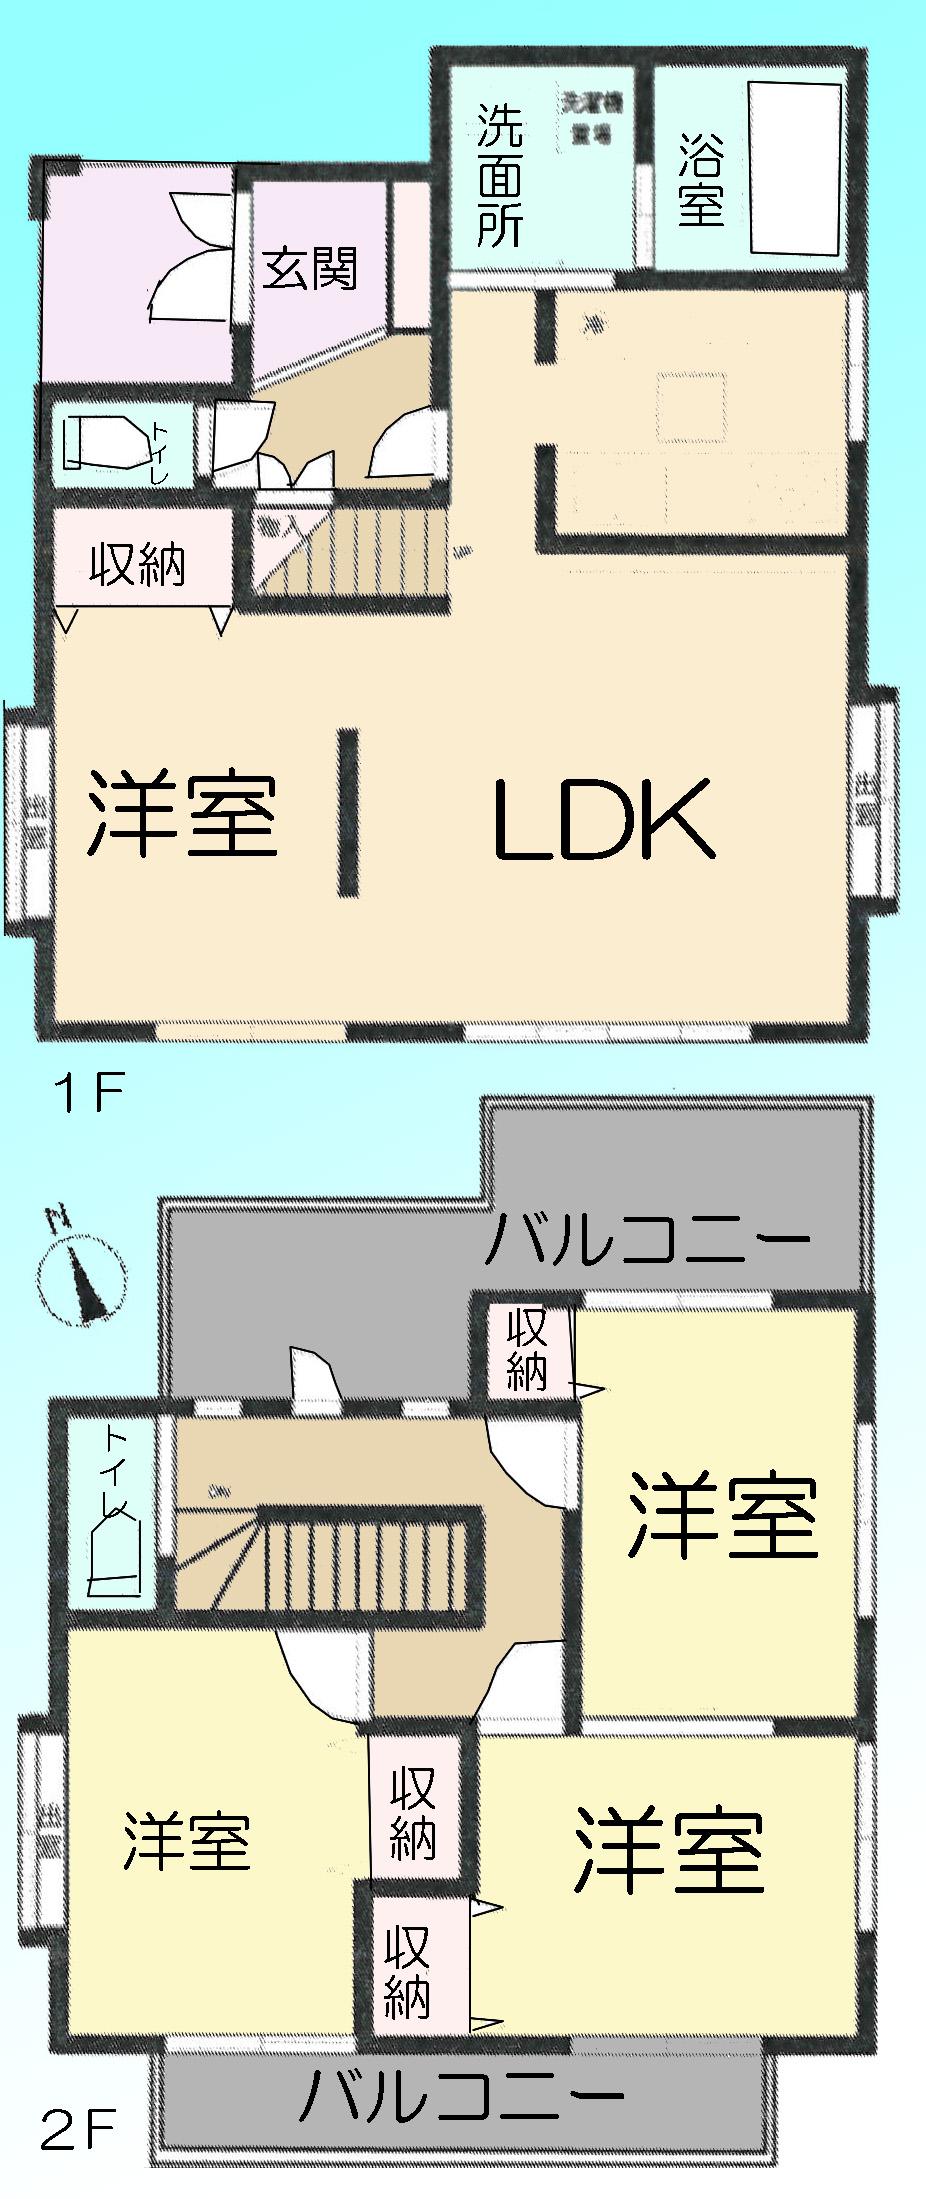 Floor plan. 24 million yen, 3LDK, Land area 108.54 sq m , Building area 96.05 sq m